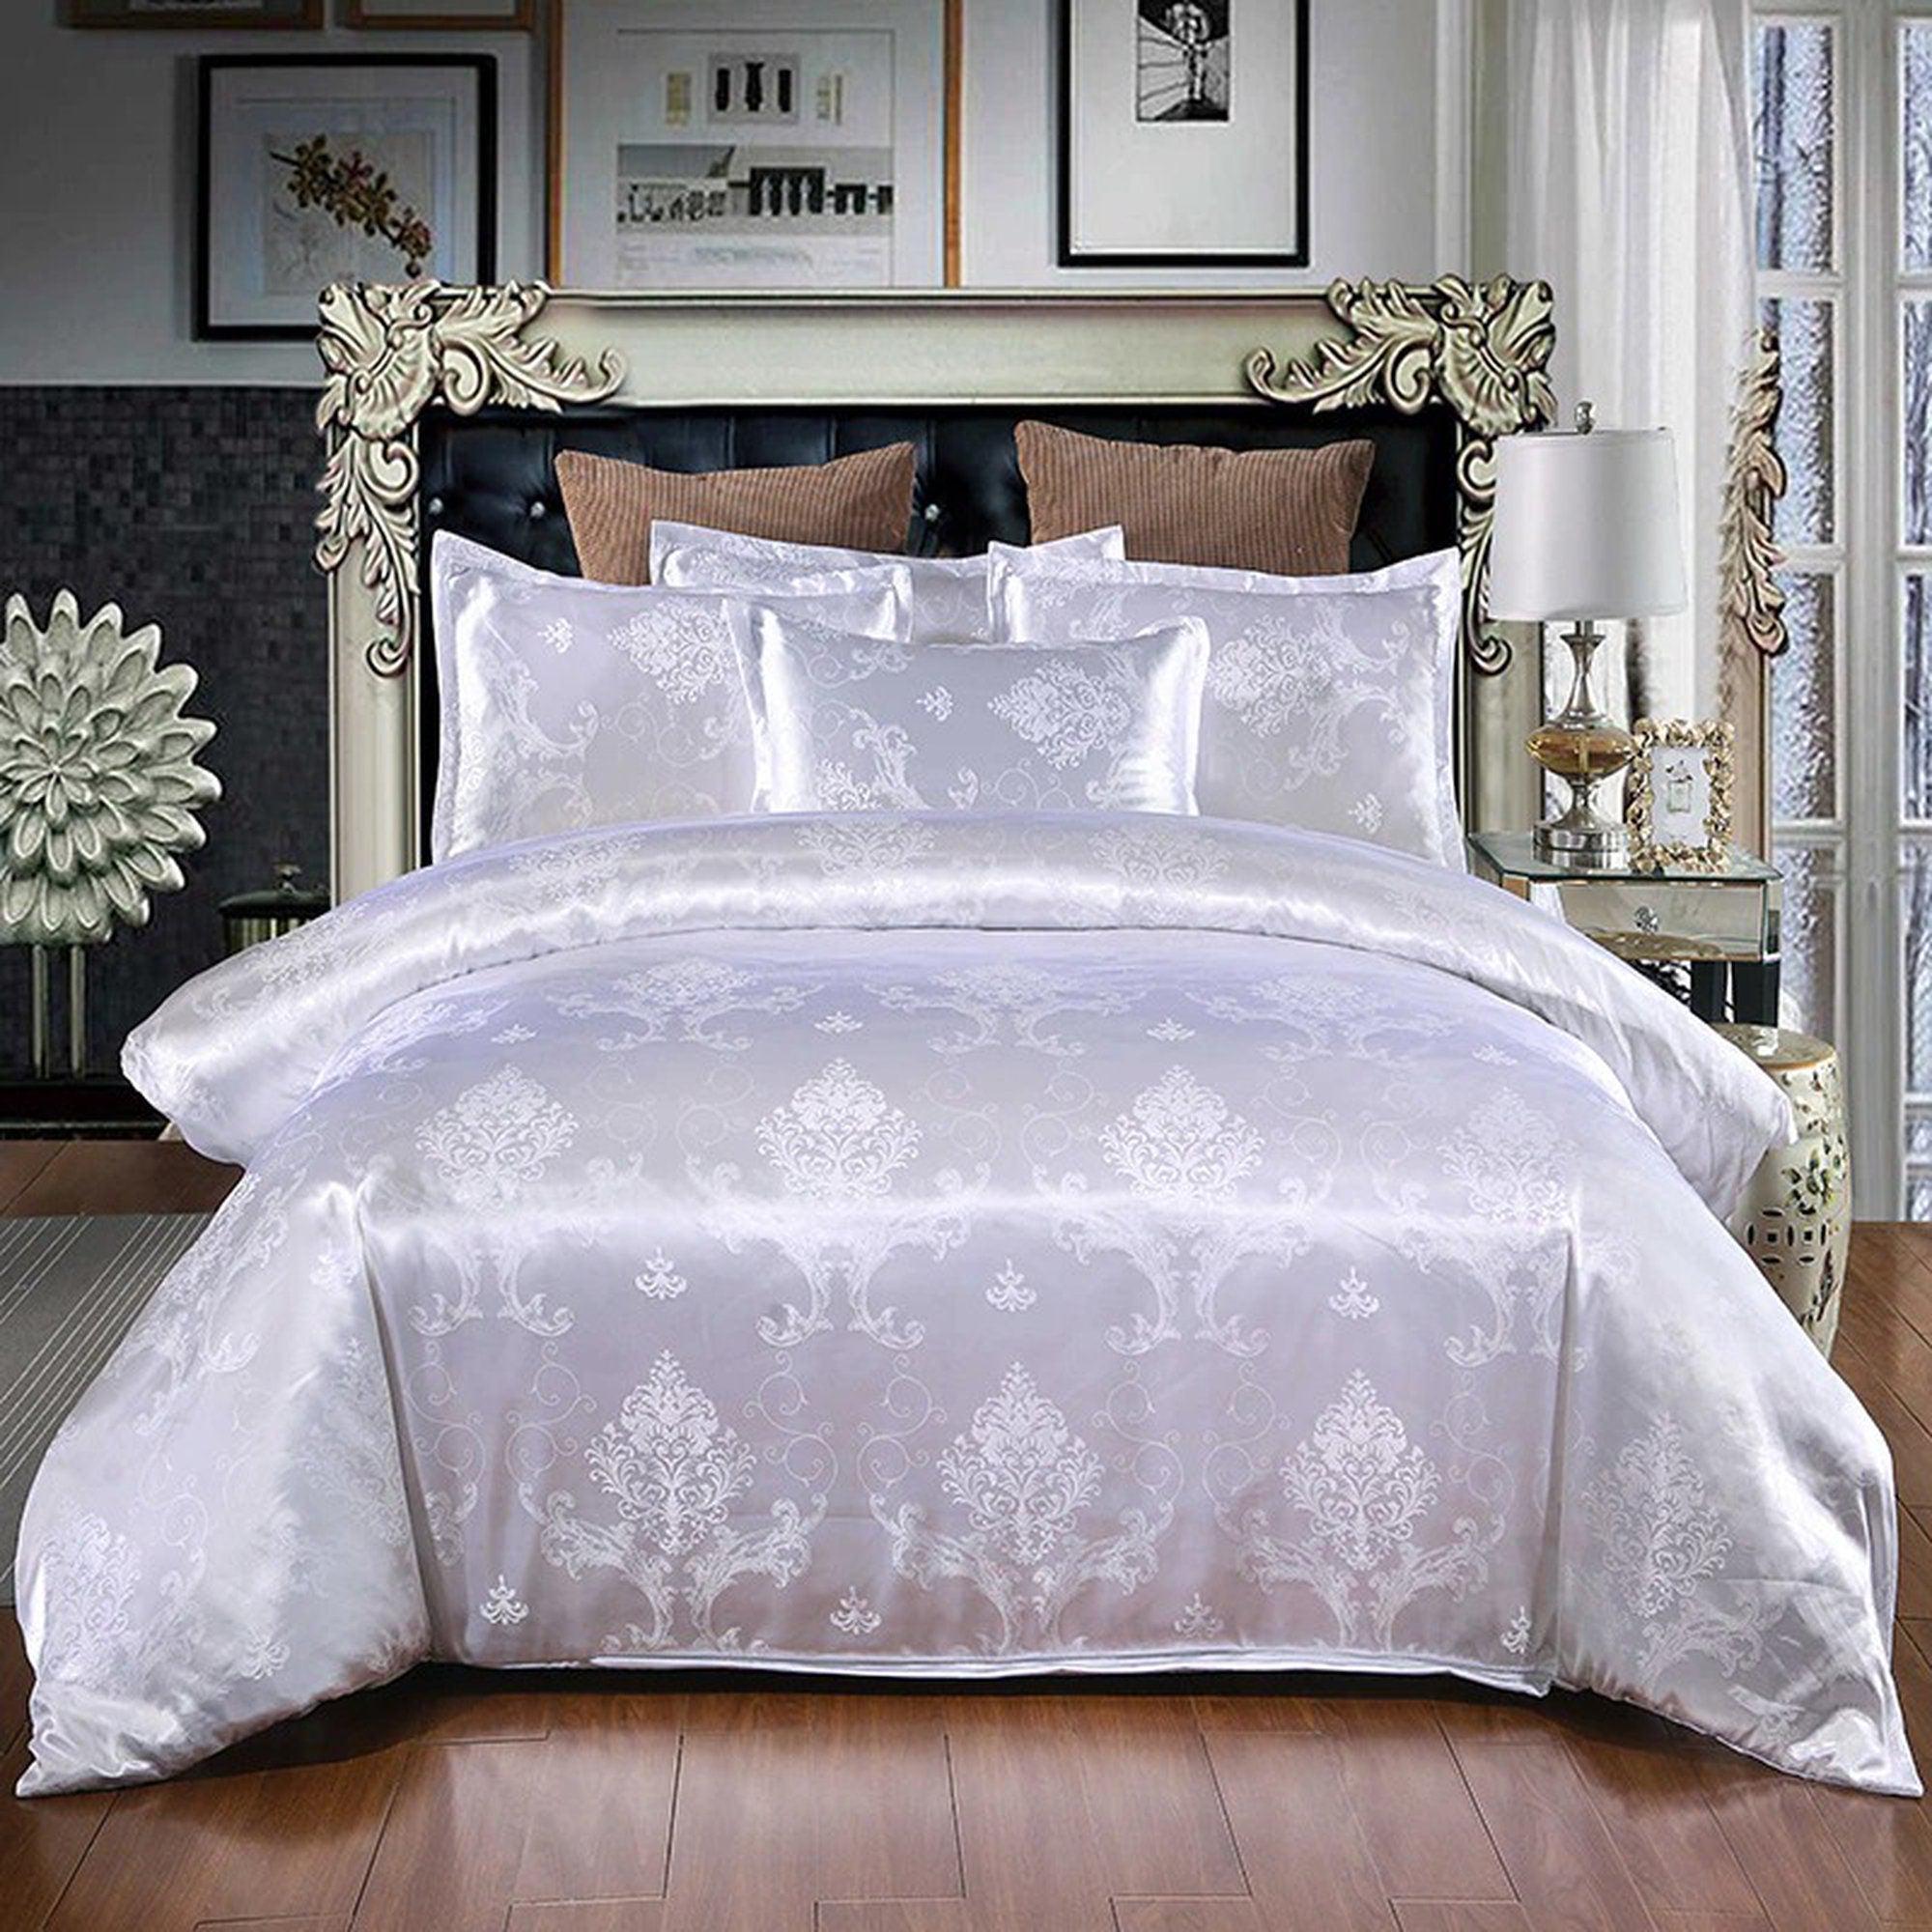 daintyduvet Luxury Bedding made with Silky White Jacquard Fabric, Damask Duvet Cover Set, Designer Bedding, Aesthetic Duvet King Queen Full Twin